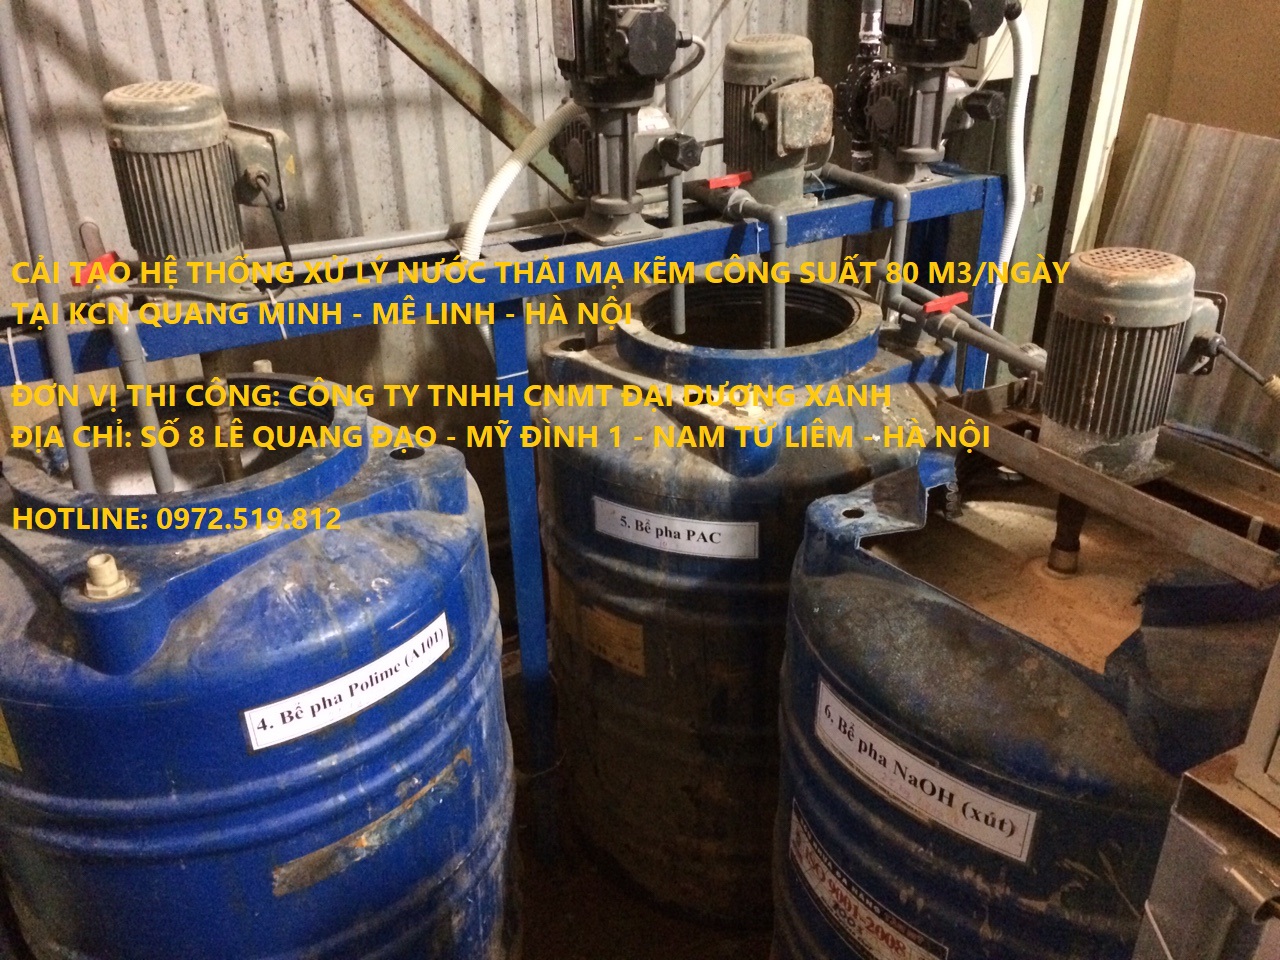 Cải tạo hệ thống xử lý nước thải mạ kẽm - bể pha khuấy bơm hóa chất